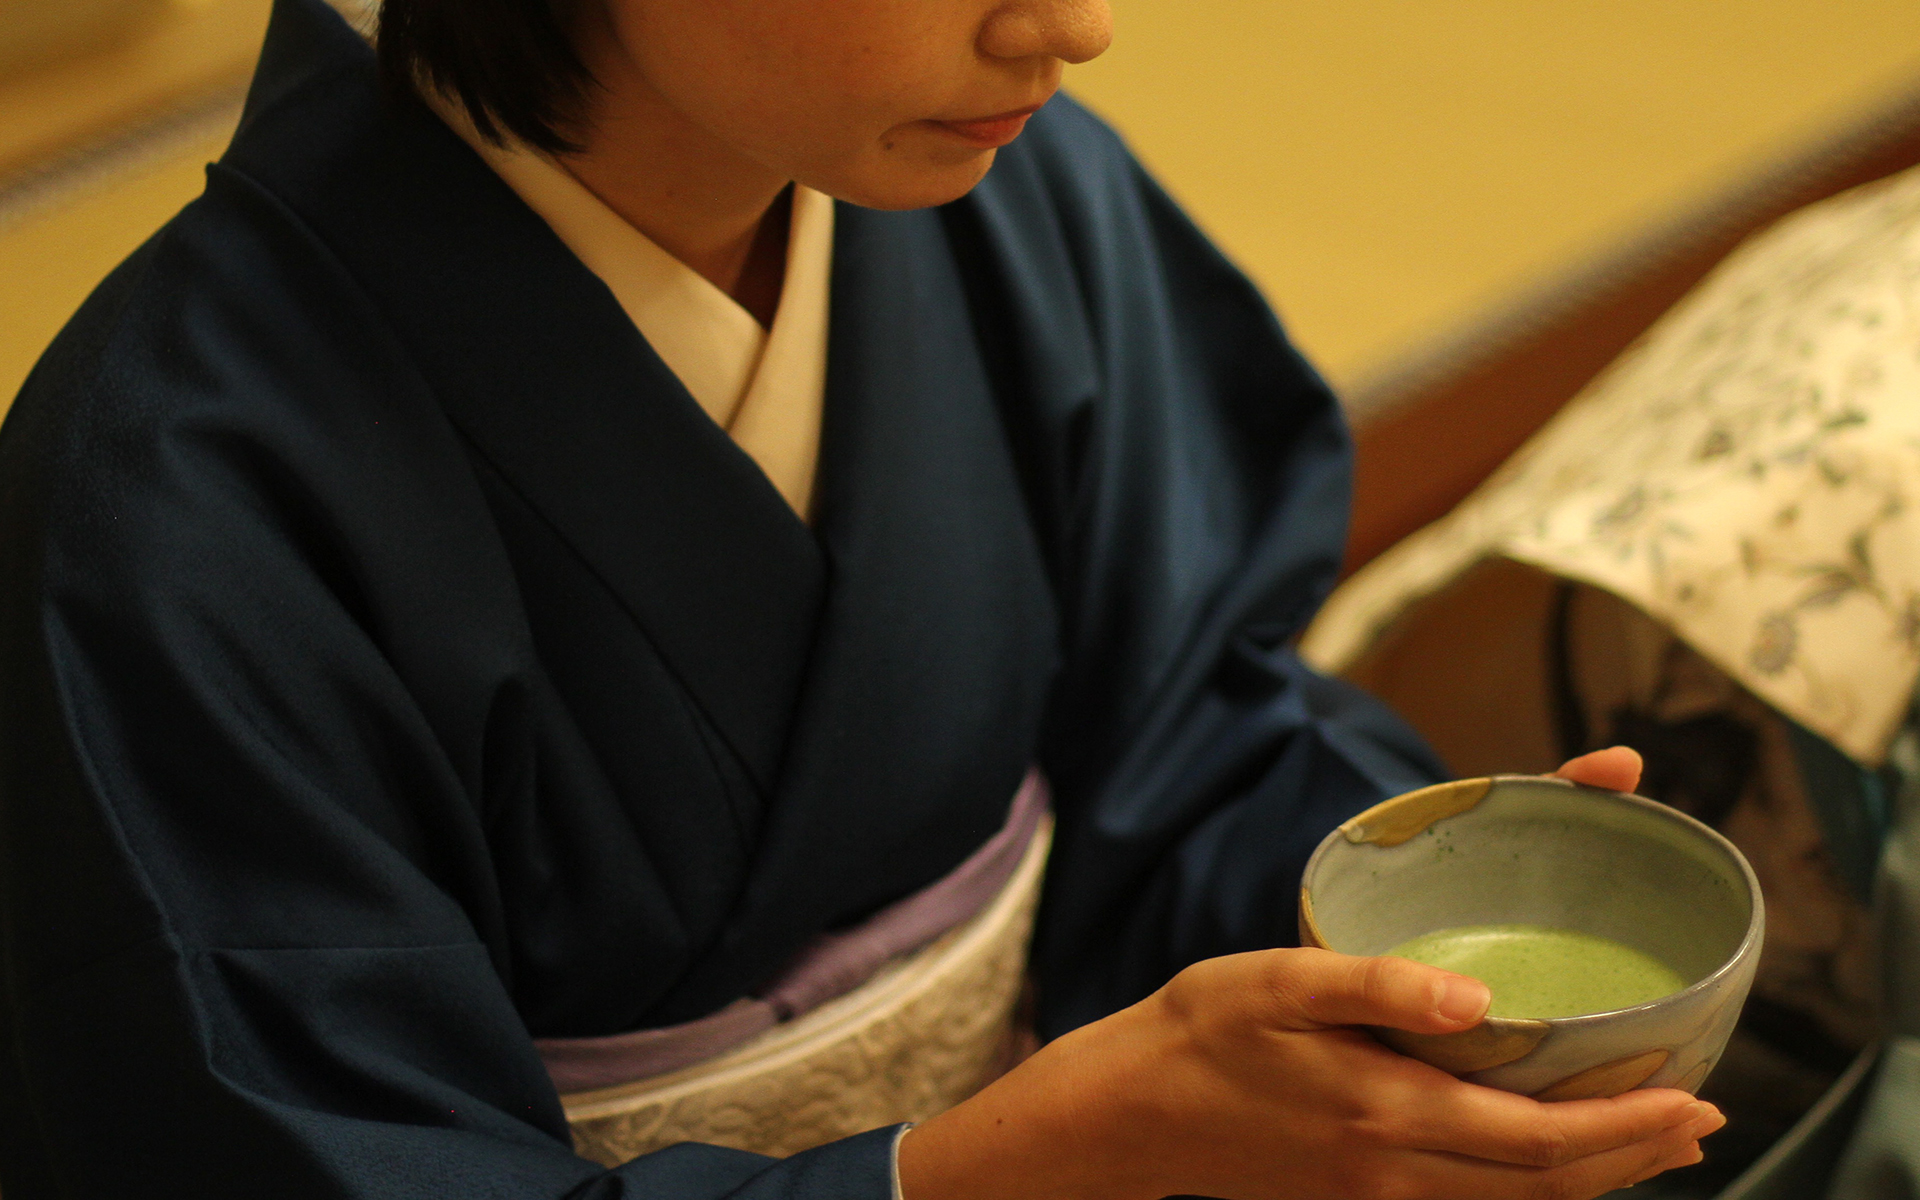 木村宗慎先生に習う、はじめての茶道。「練習でなく、稽古です」